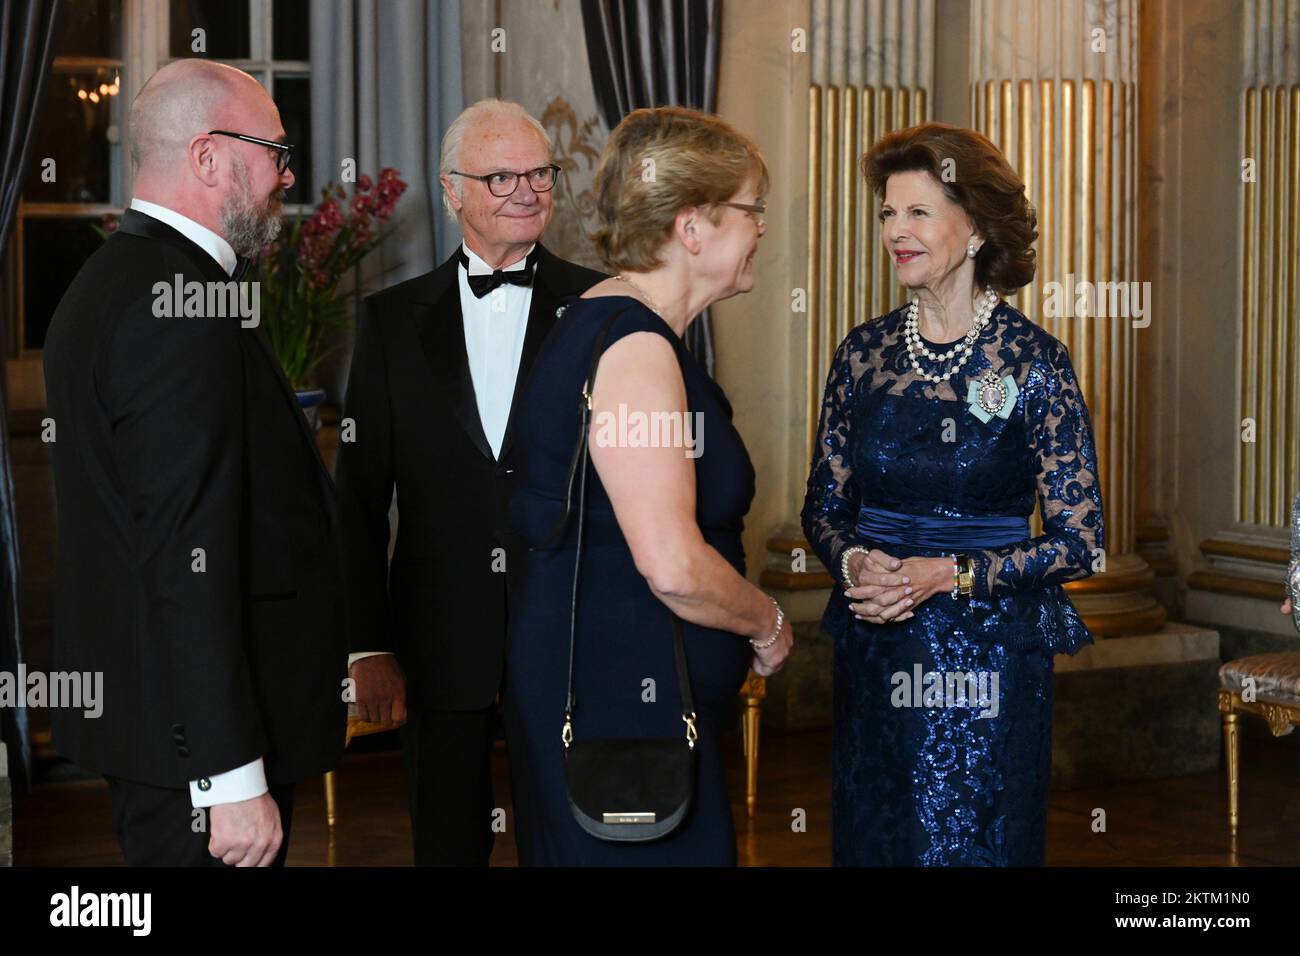 Il re Carlo XVI Gustaf e la regina Silvia di Svezia accolgono i membri del Parlamento svedese durante una cena al Palazzo reale di Stoccolma, in Svezia Foto Stock